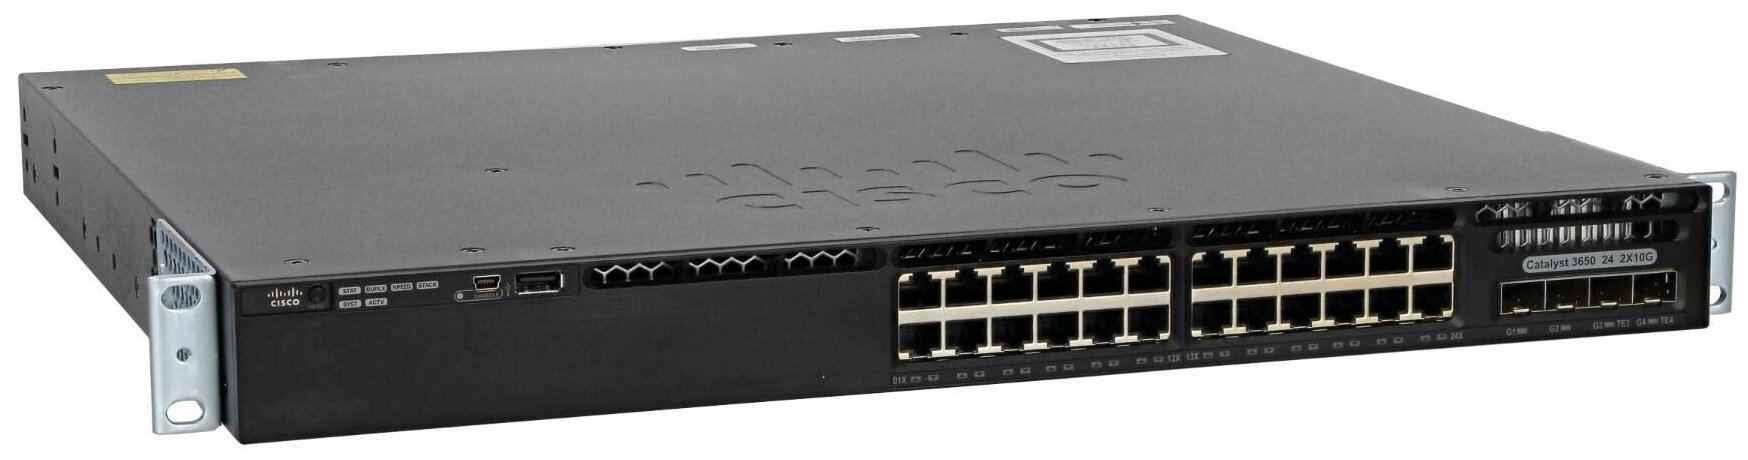 Коммутатор Cisco Catalyst 3650 24 Port Data 2x10G Uplink IP Base